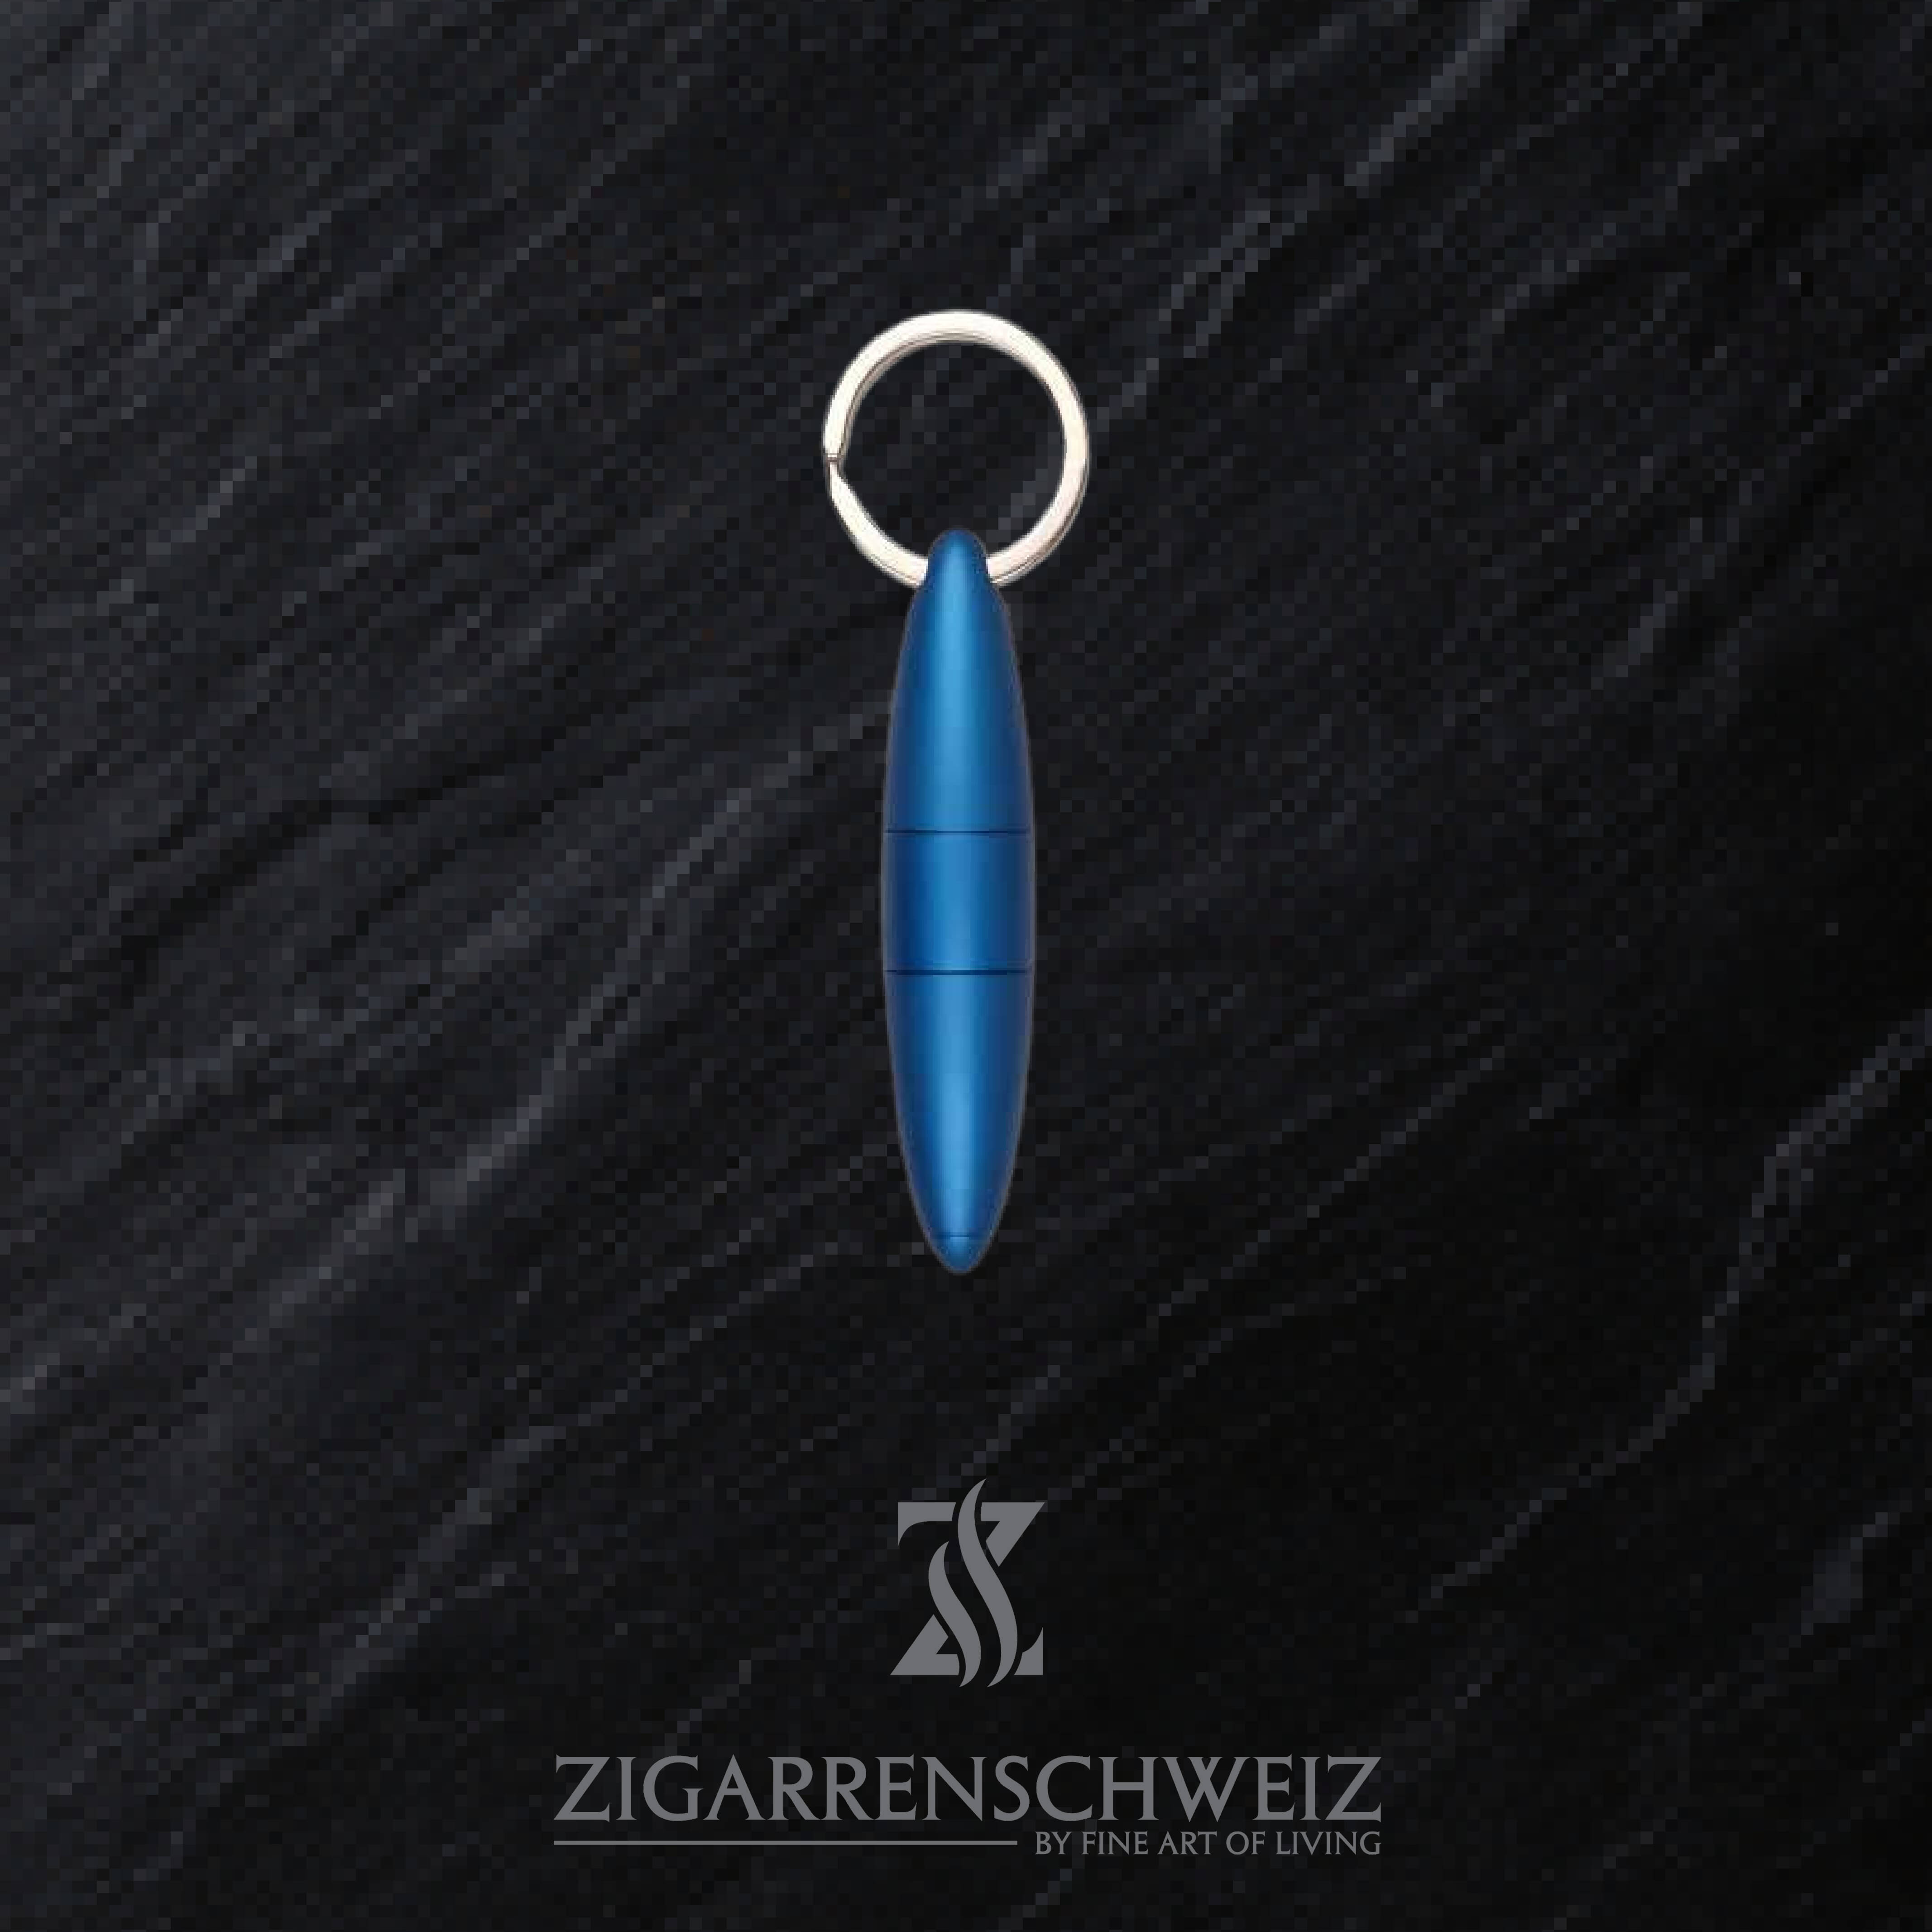 Passatore Zigarren Puncher und Zigarren Bohrer, praktischer Schlüsselanhänger, zwei in eins, Farbe: Blau metallisiert